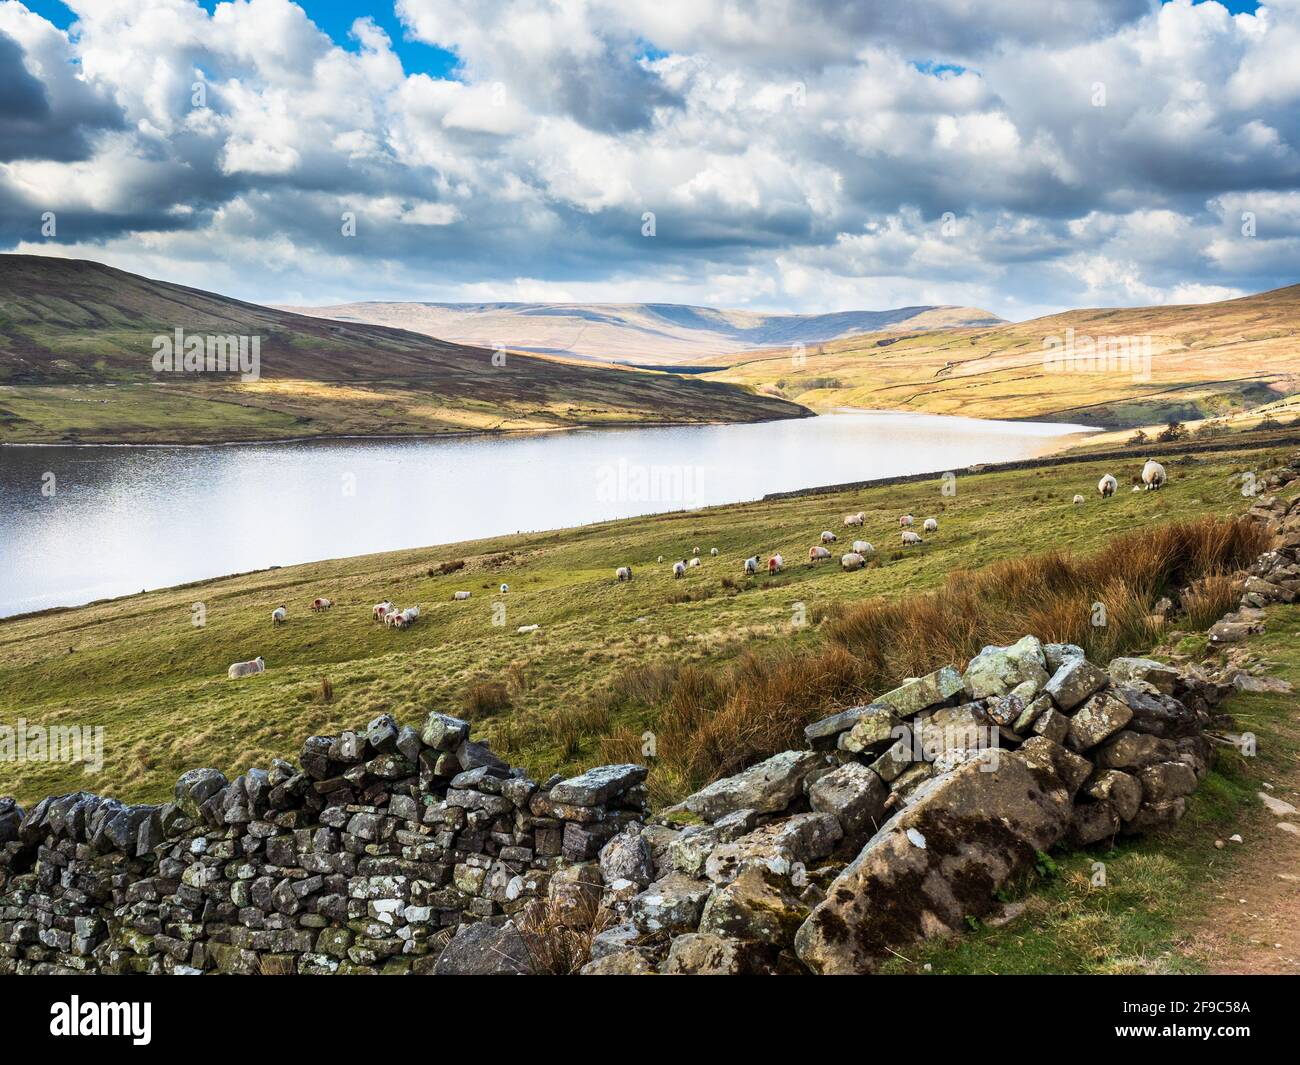 Depósito de Scar House en los valles de Yorkshire, con ovejas, montañas y una pared de piedra seca con nubes ondulantes Foto de stock